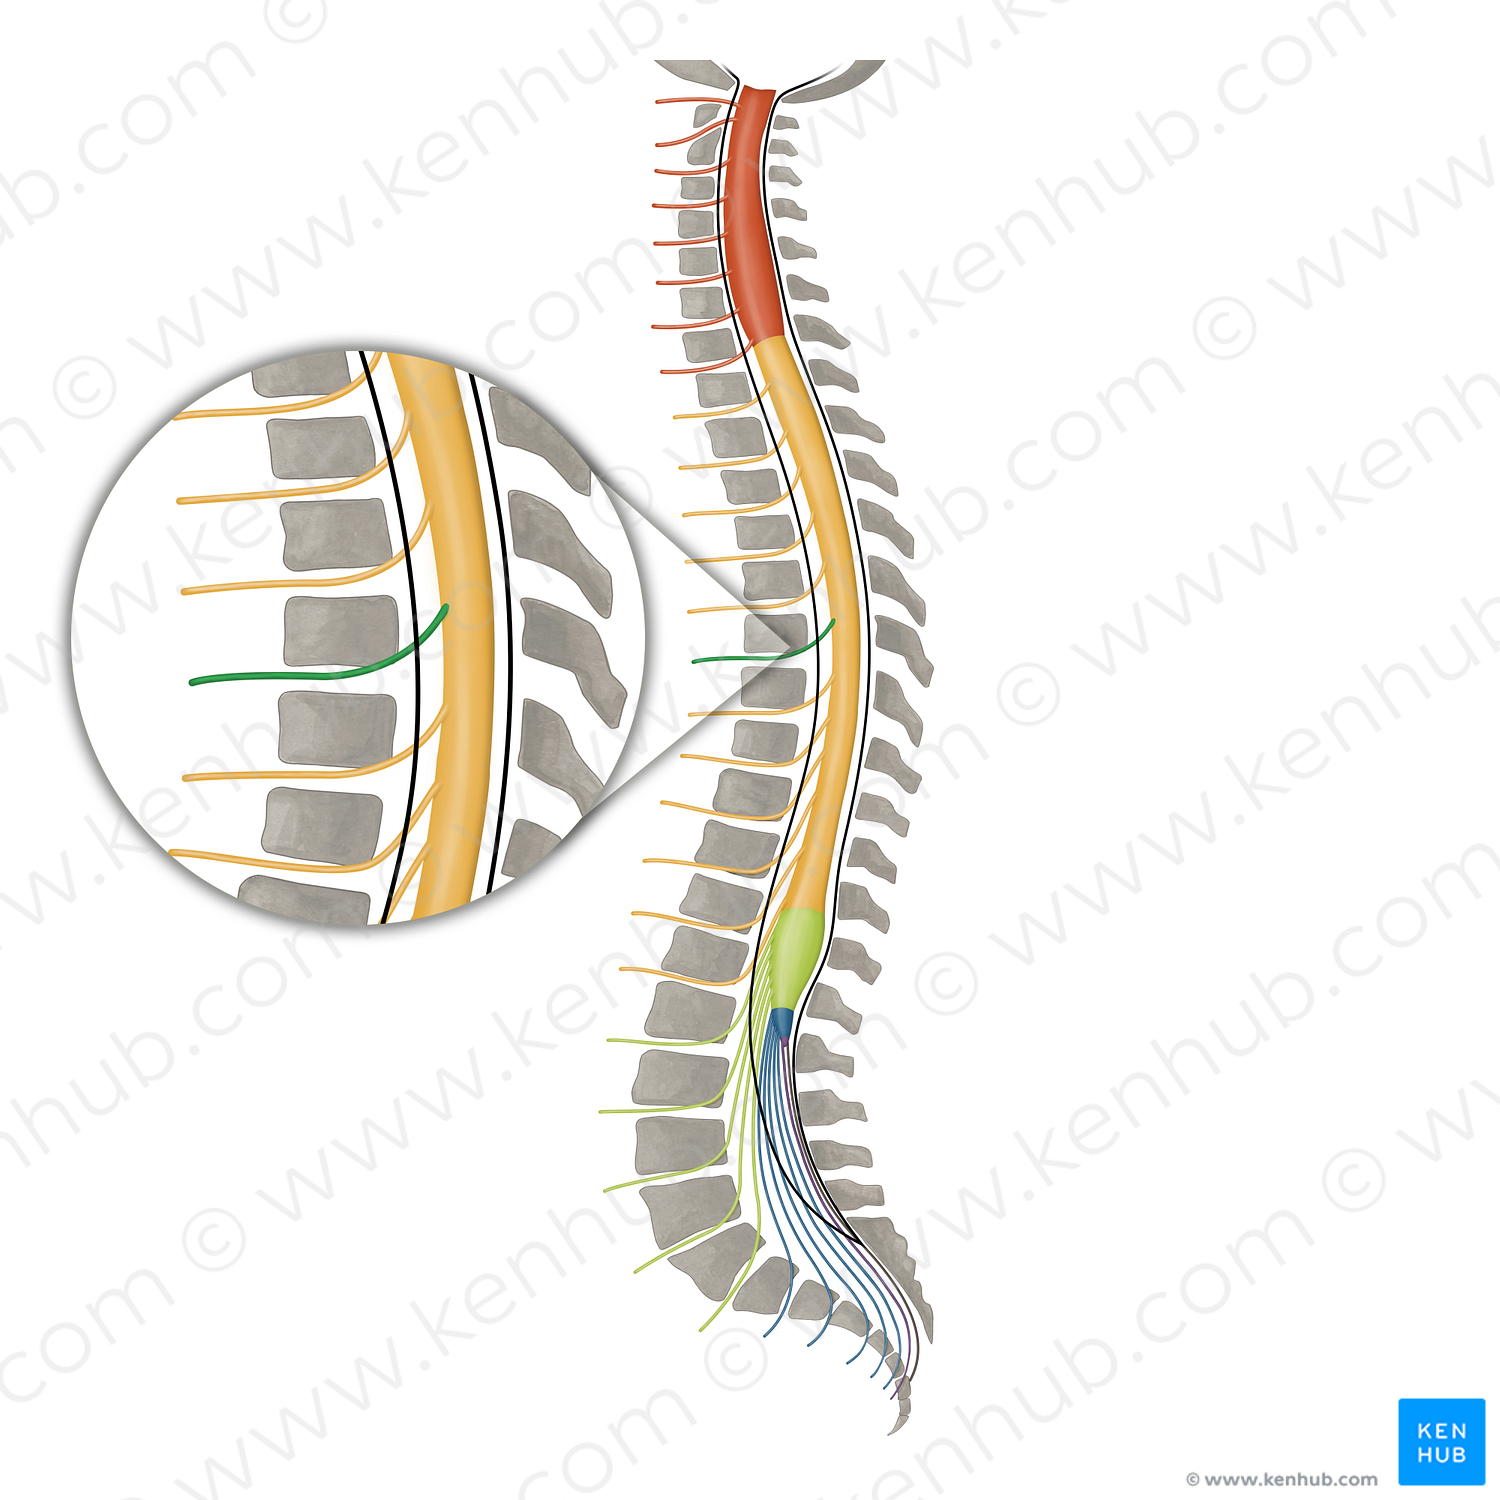 Spinal nerve T6 (#16152)